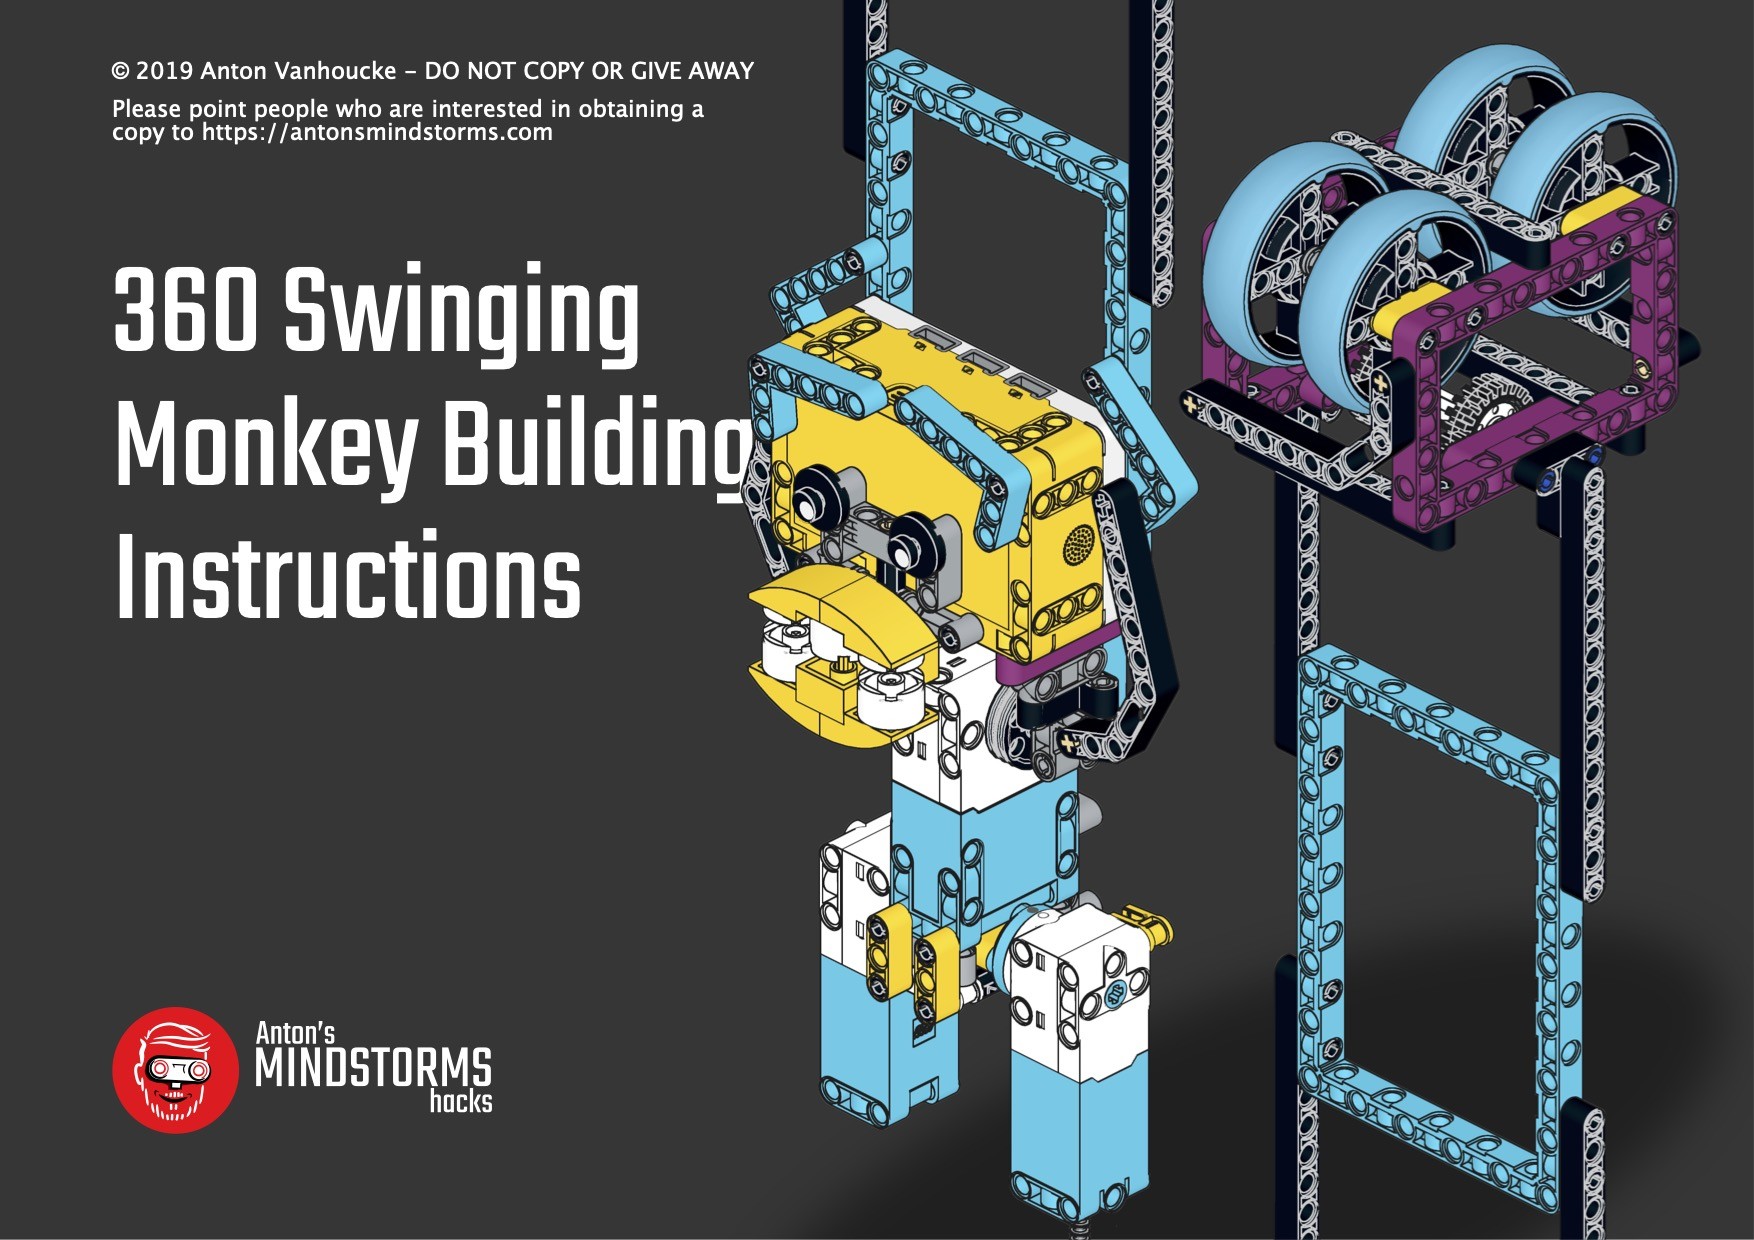 360 Swinging Monkey Building Instructions